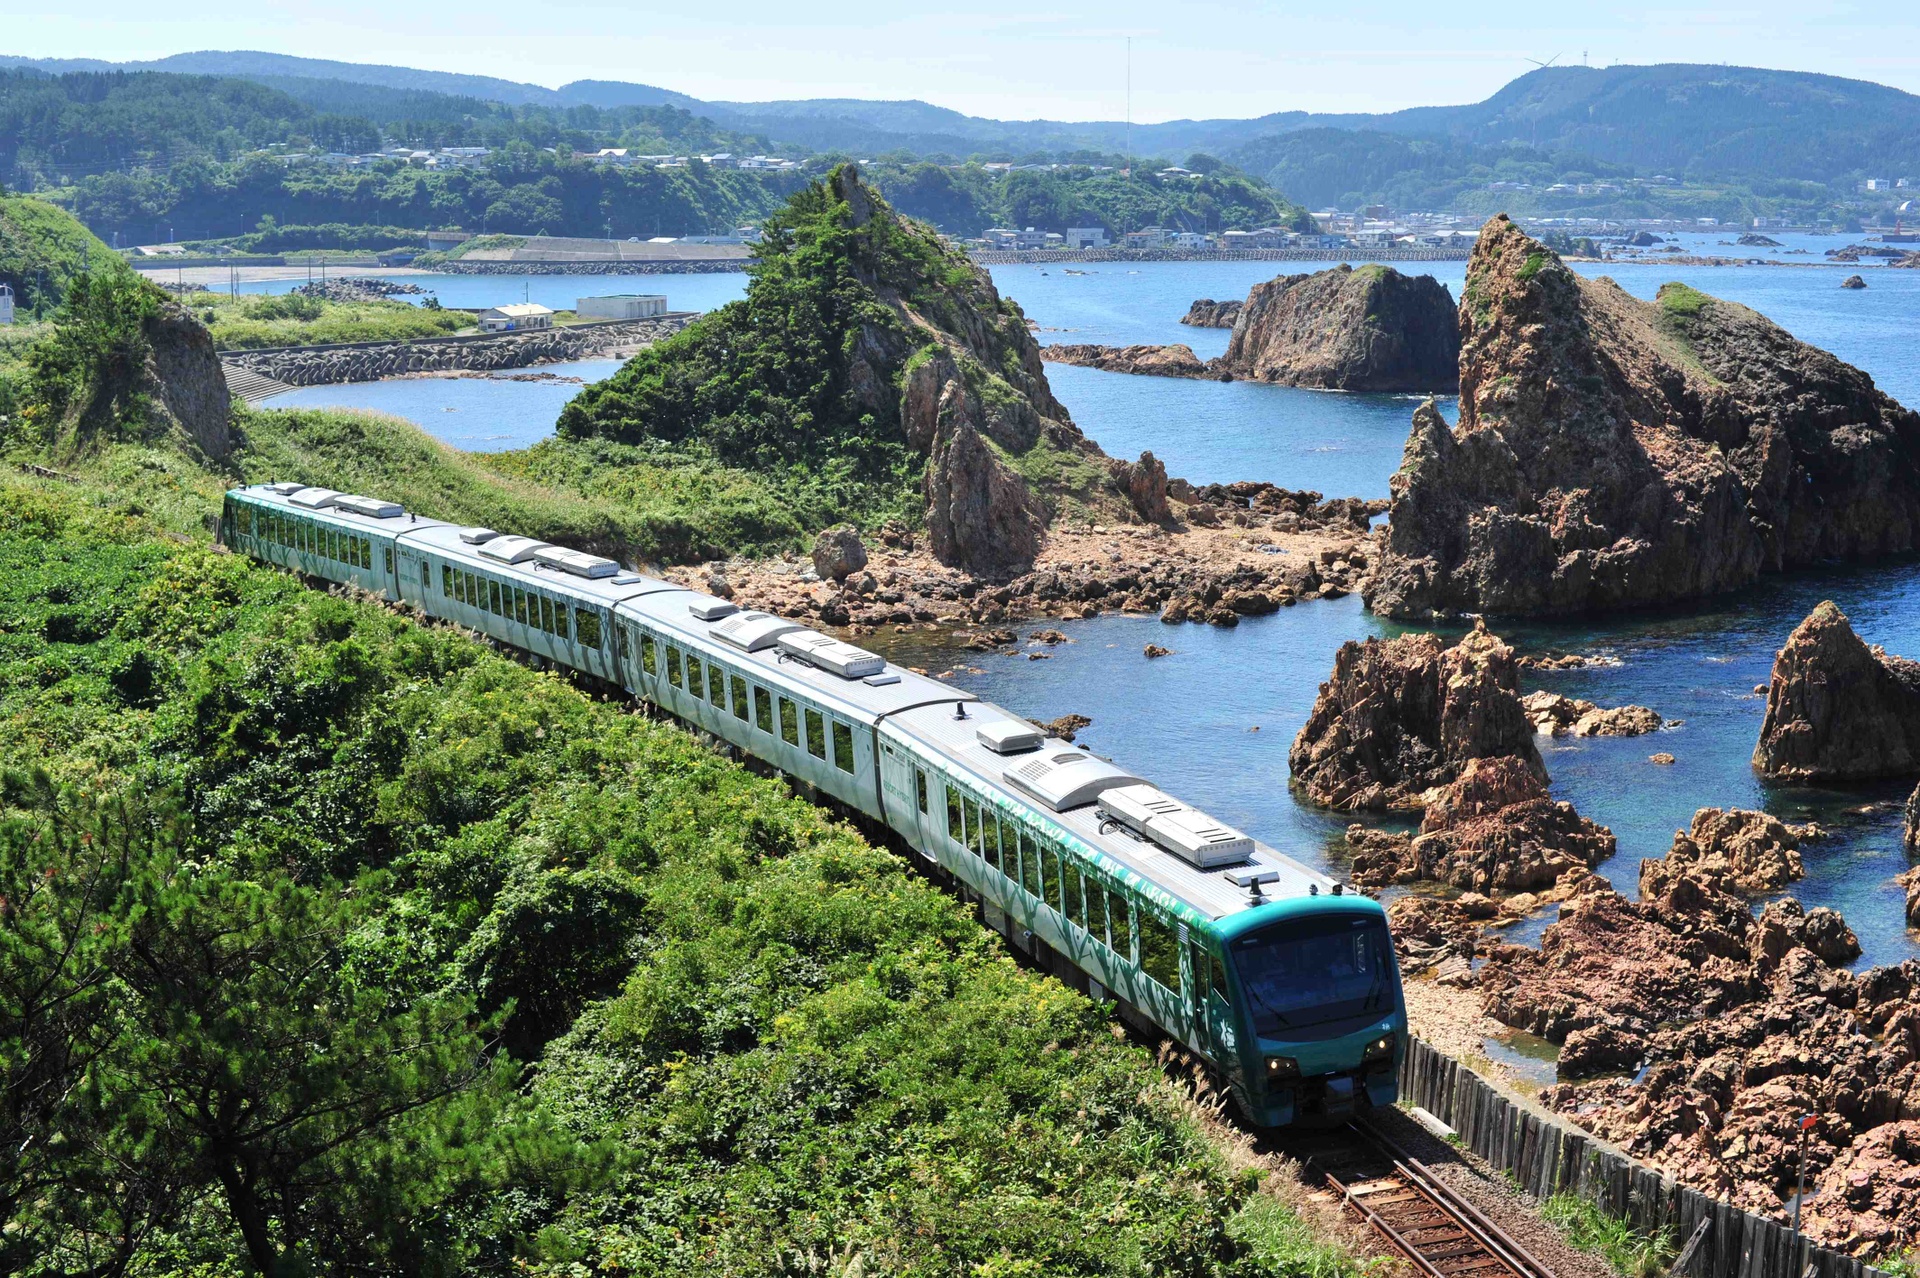 Hình ảnh chuyến tàu chậm nhất Nhật Bản, chỉ 10km/h - Ảnh 2.